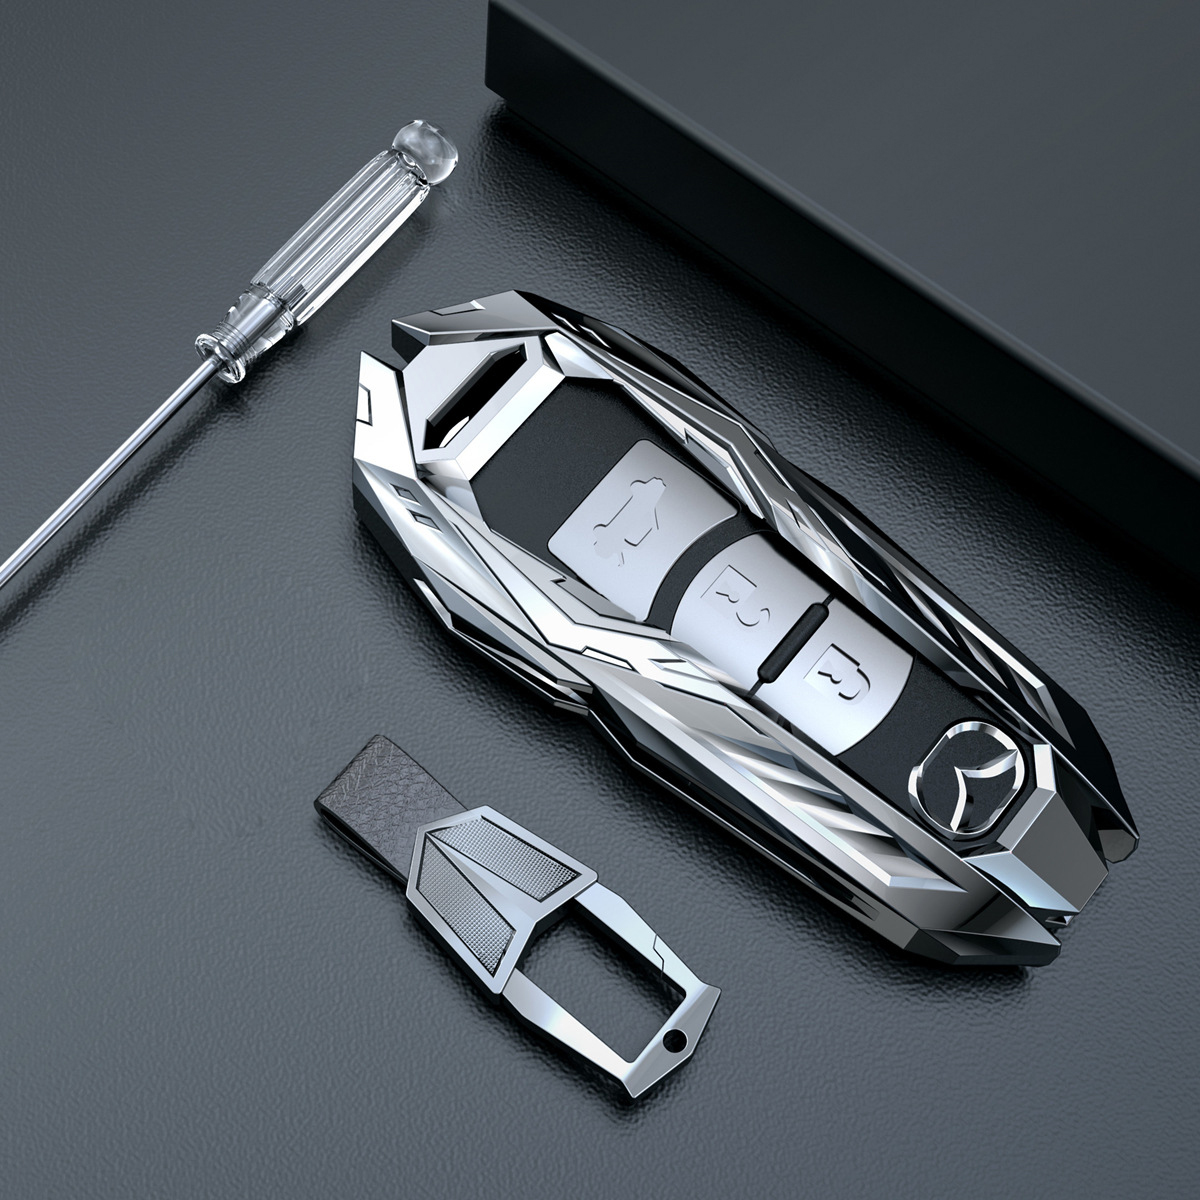 Ốp chìa khóa ô tô Mazda sang trọng PKXH-177 (Bạc)